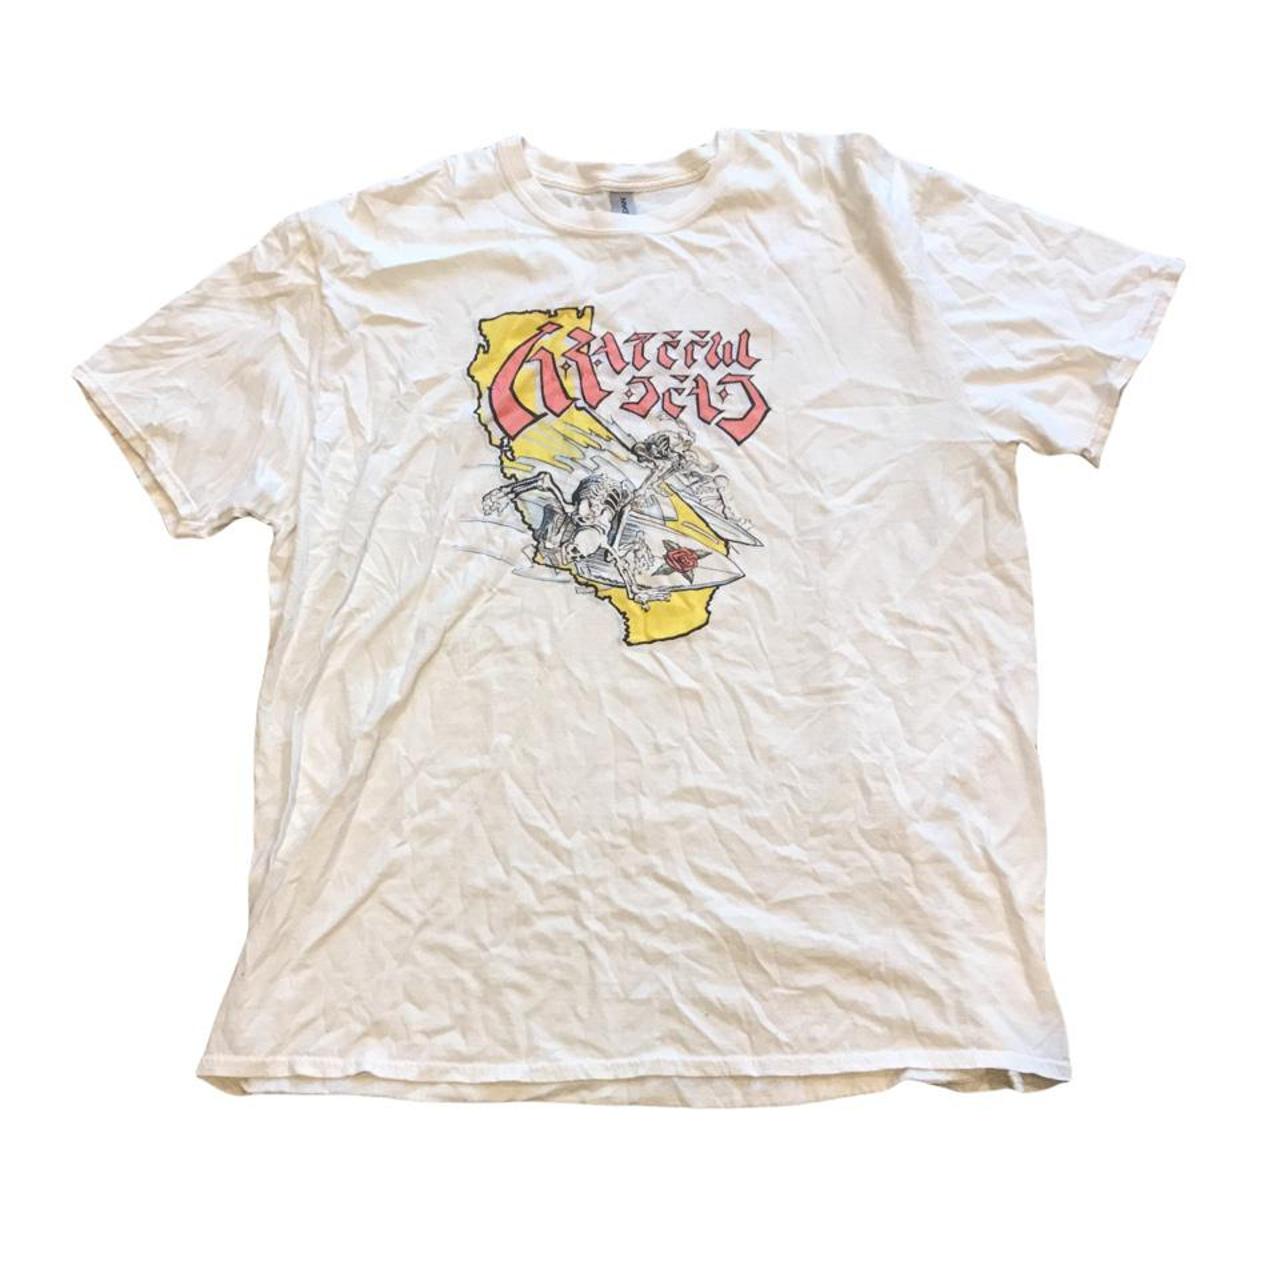 Grateful Dead Shirt - Size 2XL - Free shipping... - Depop